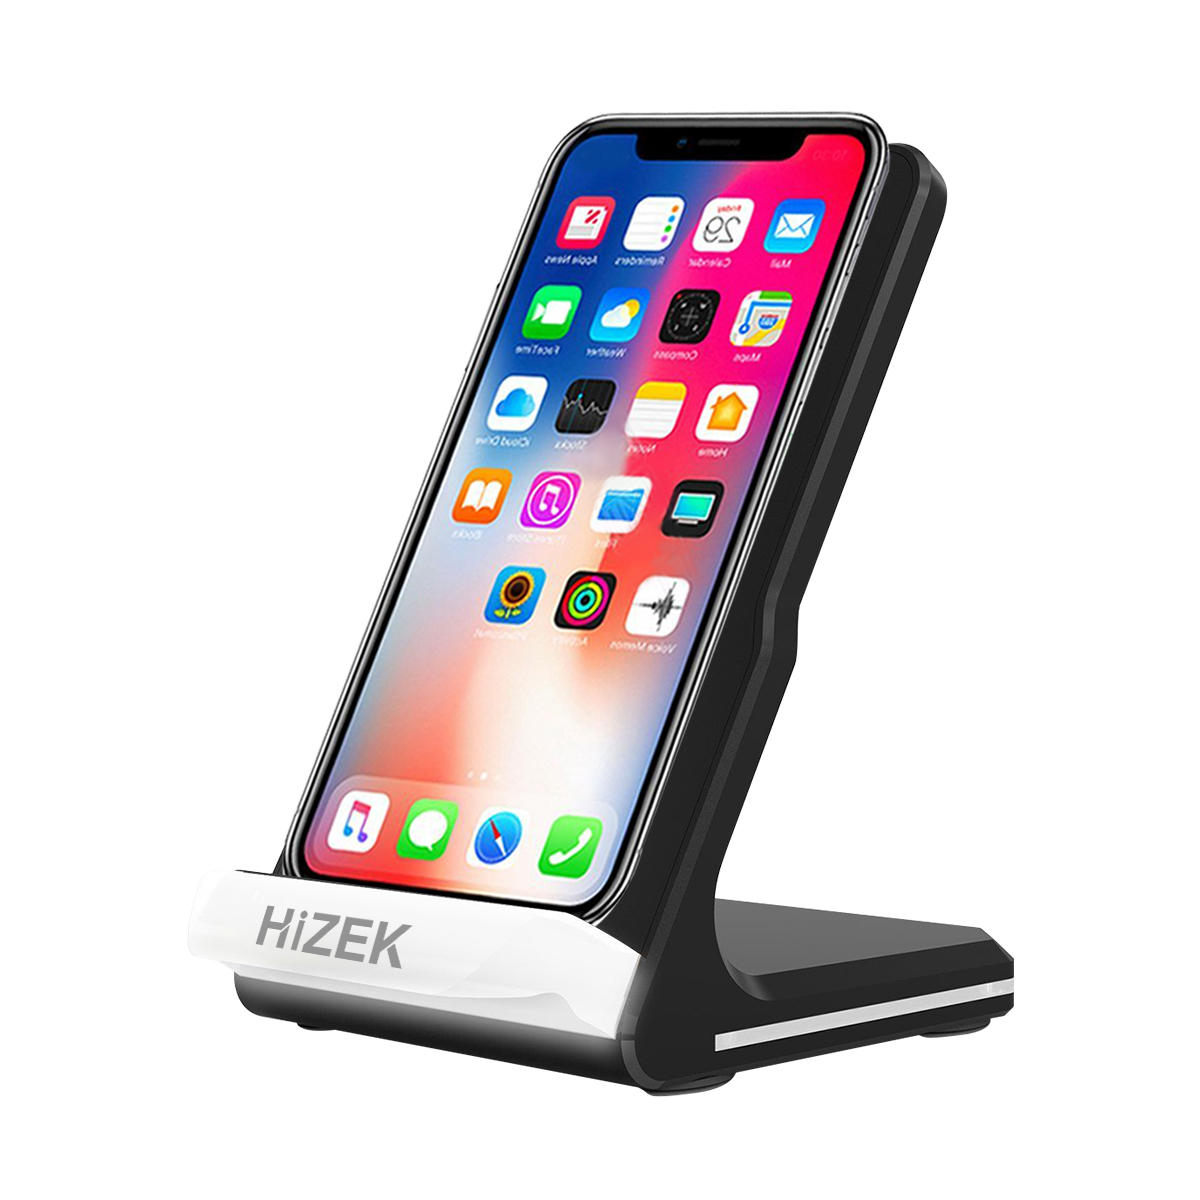 Hizek 10 Watt QI Wireless Schnellladegerät Pad Sellphone Dock Halter Für iPhoneX 8/8 Plus Samsung S8